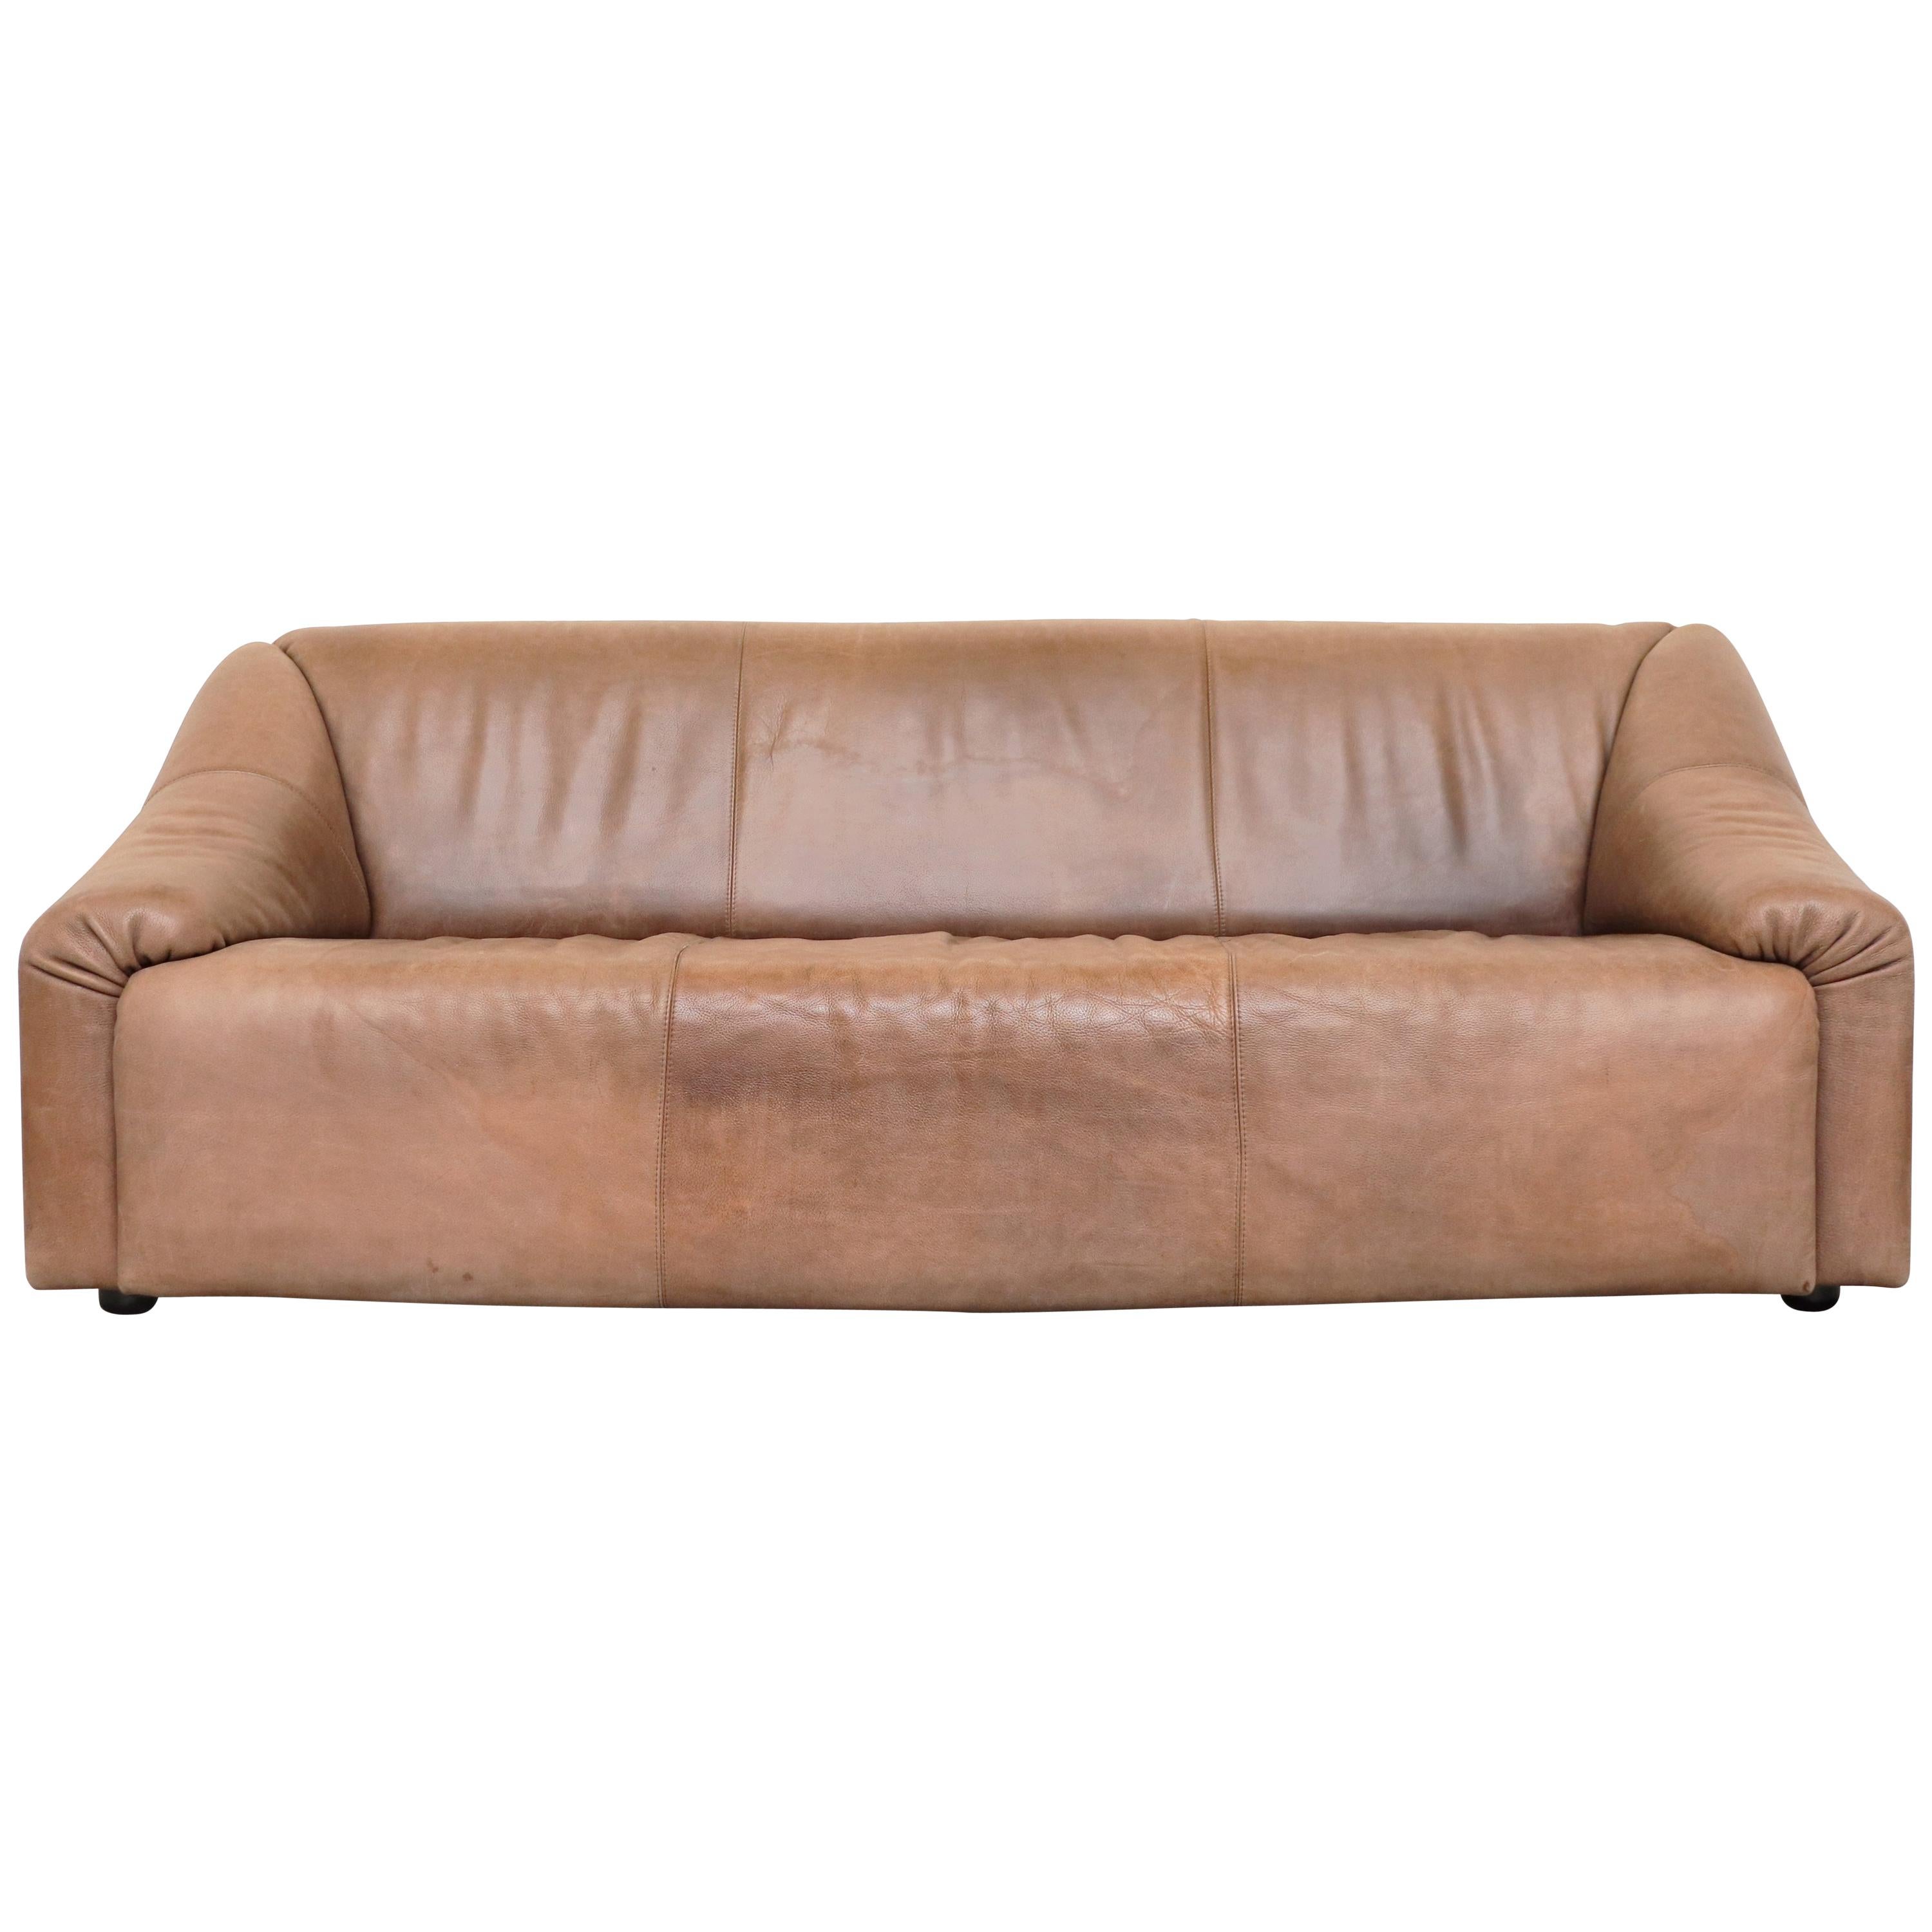 Leolux Light Buffalo Leather 3-Seat Sofa